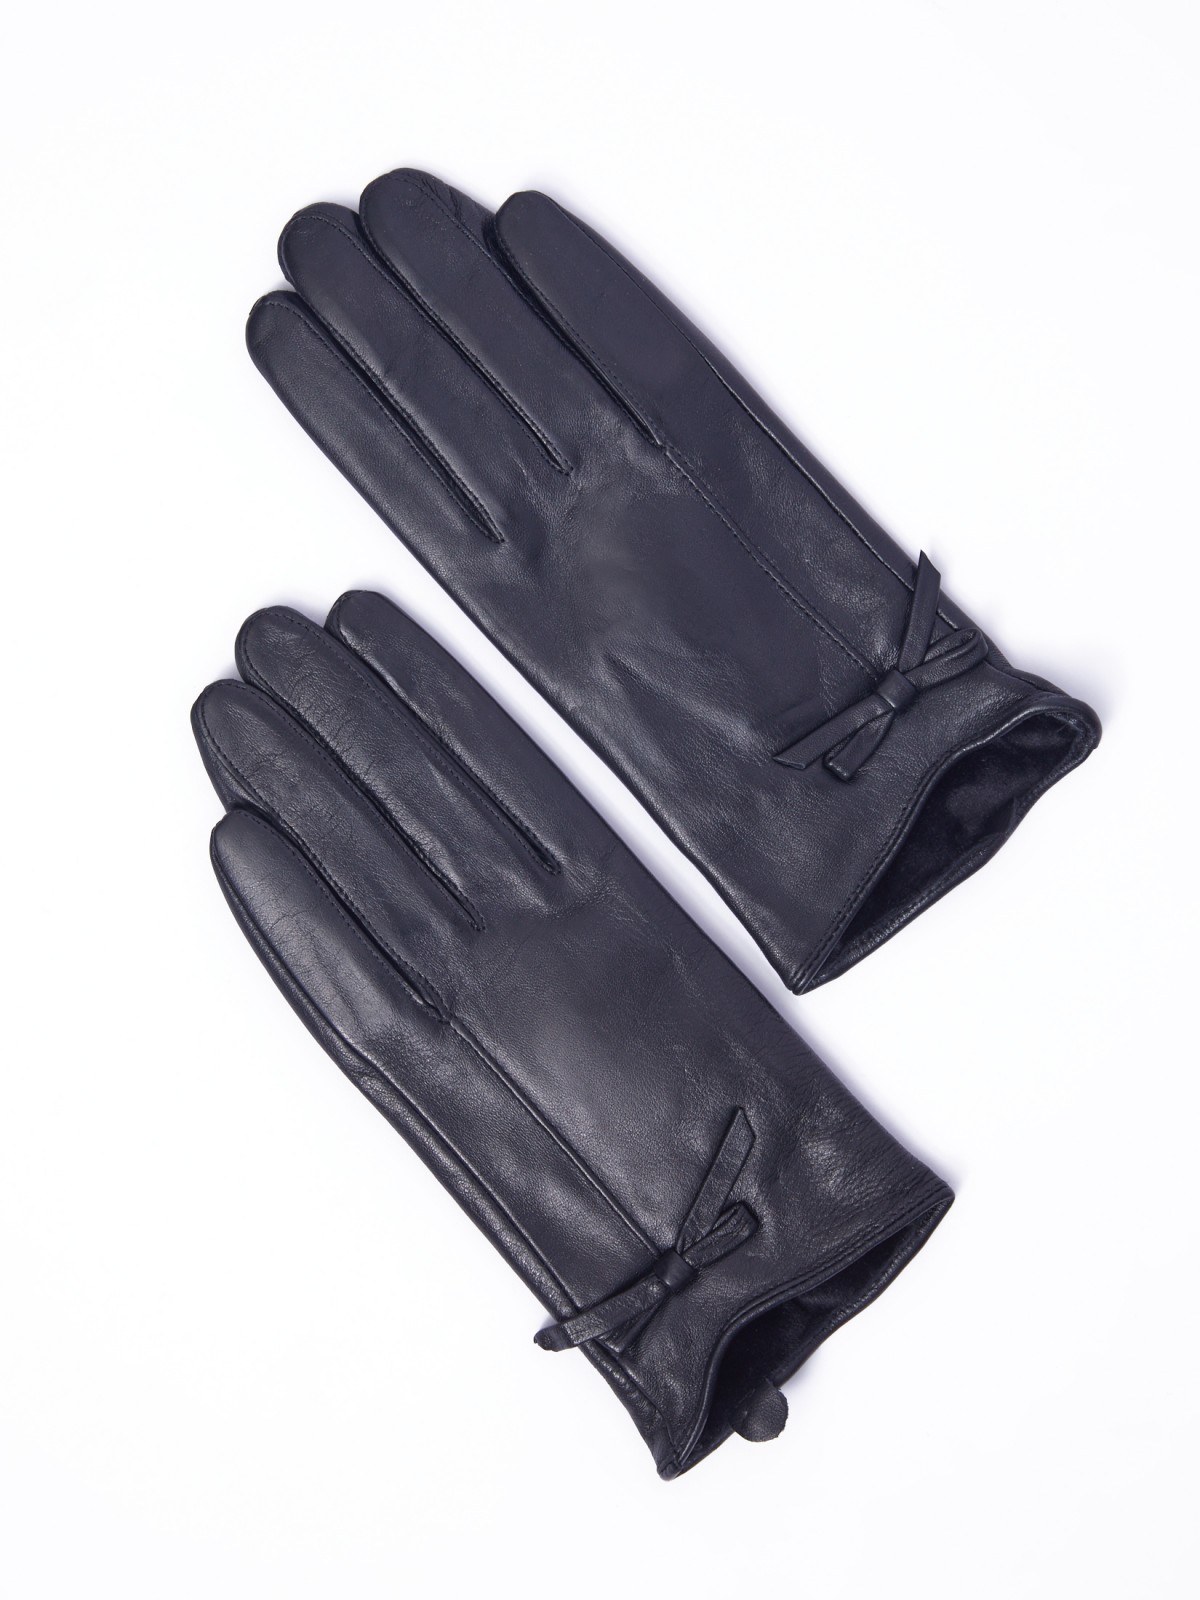 Утеплённые кожаные перчатки с флисом zolla 322339659125, цвет черный, размер S